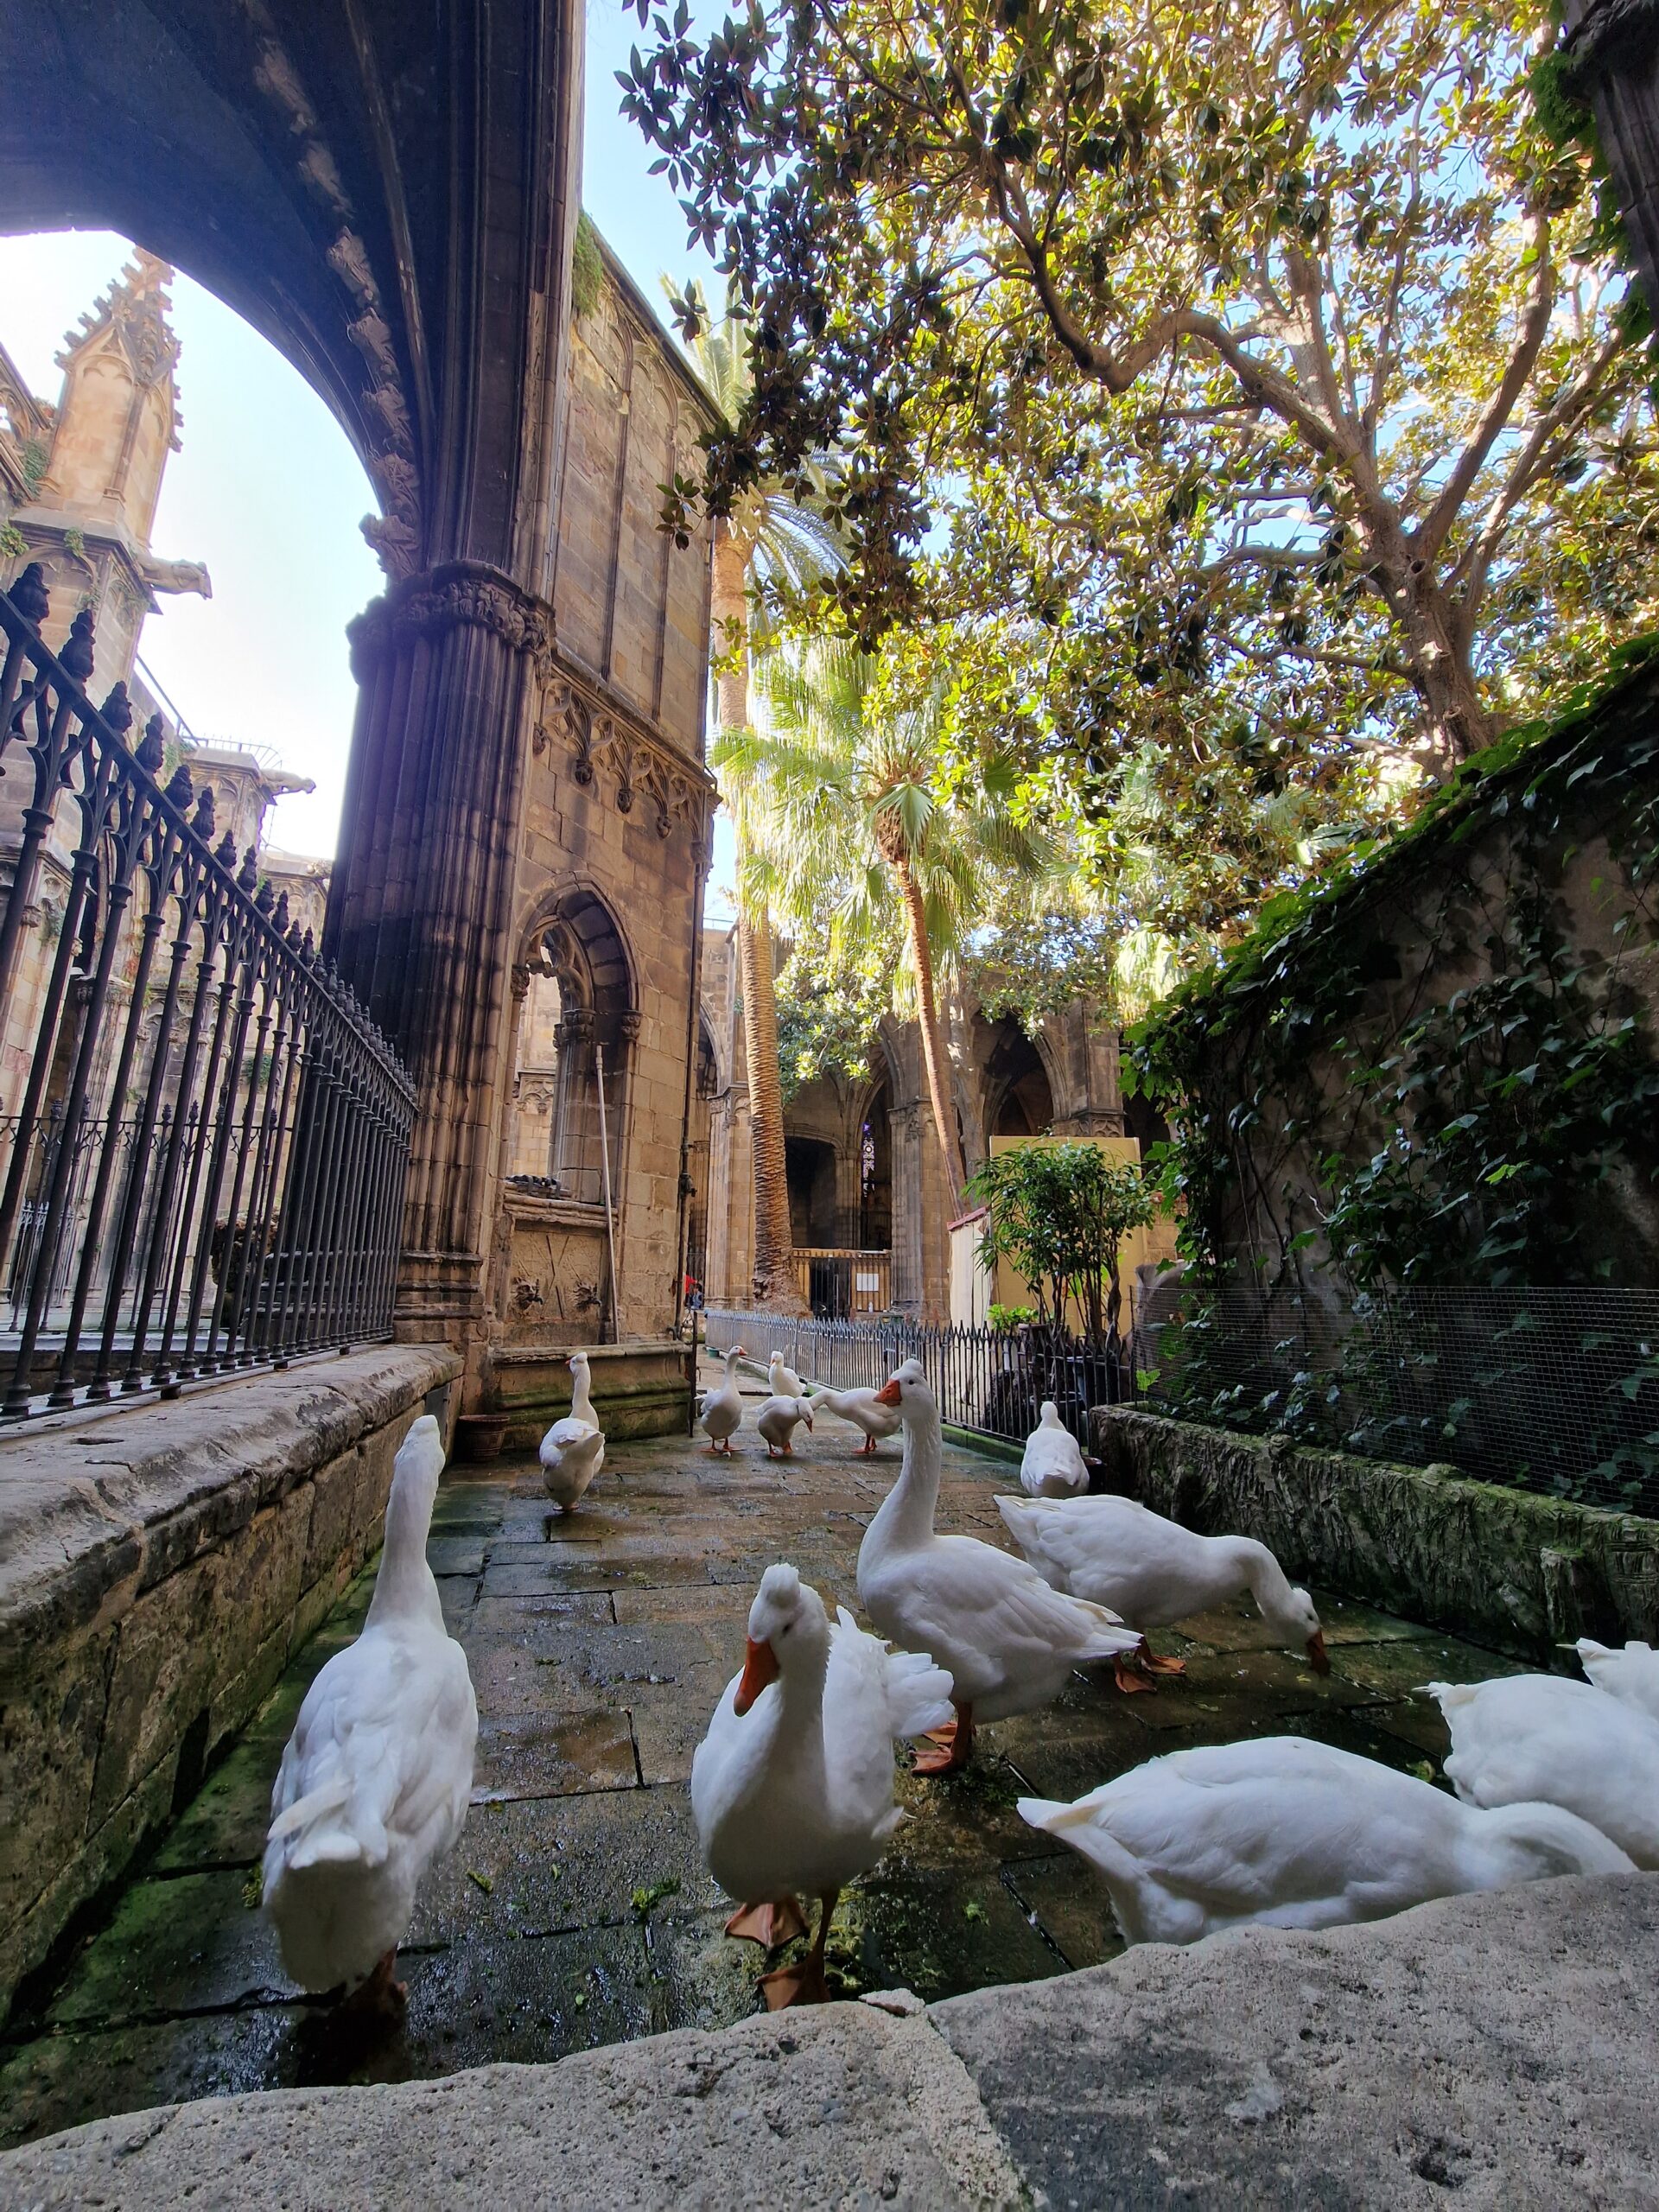 In der Kathedrale von Barcelona gibt es einen Innenhof mit Gänsen